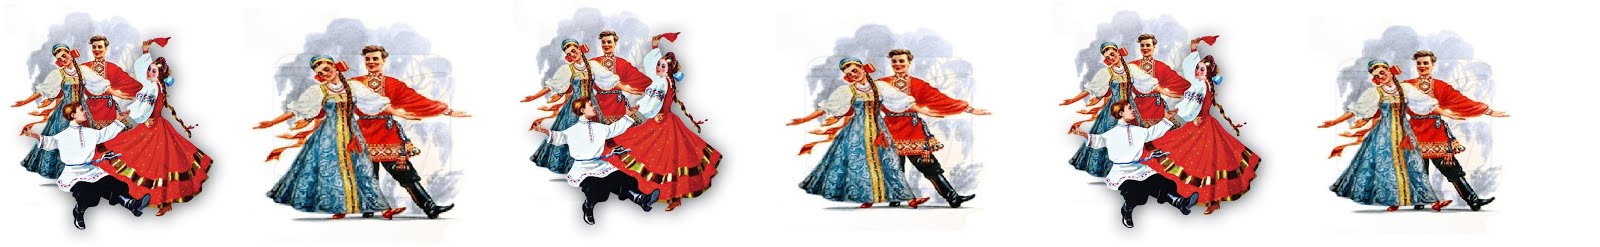 ρωσικοι παραδοσιακοι χοροι